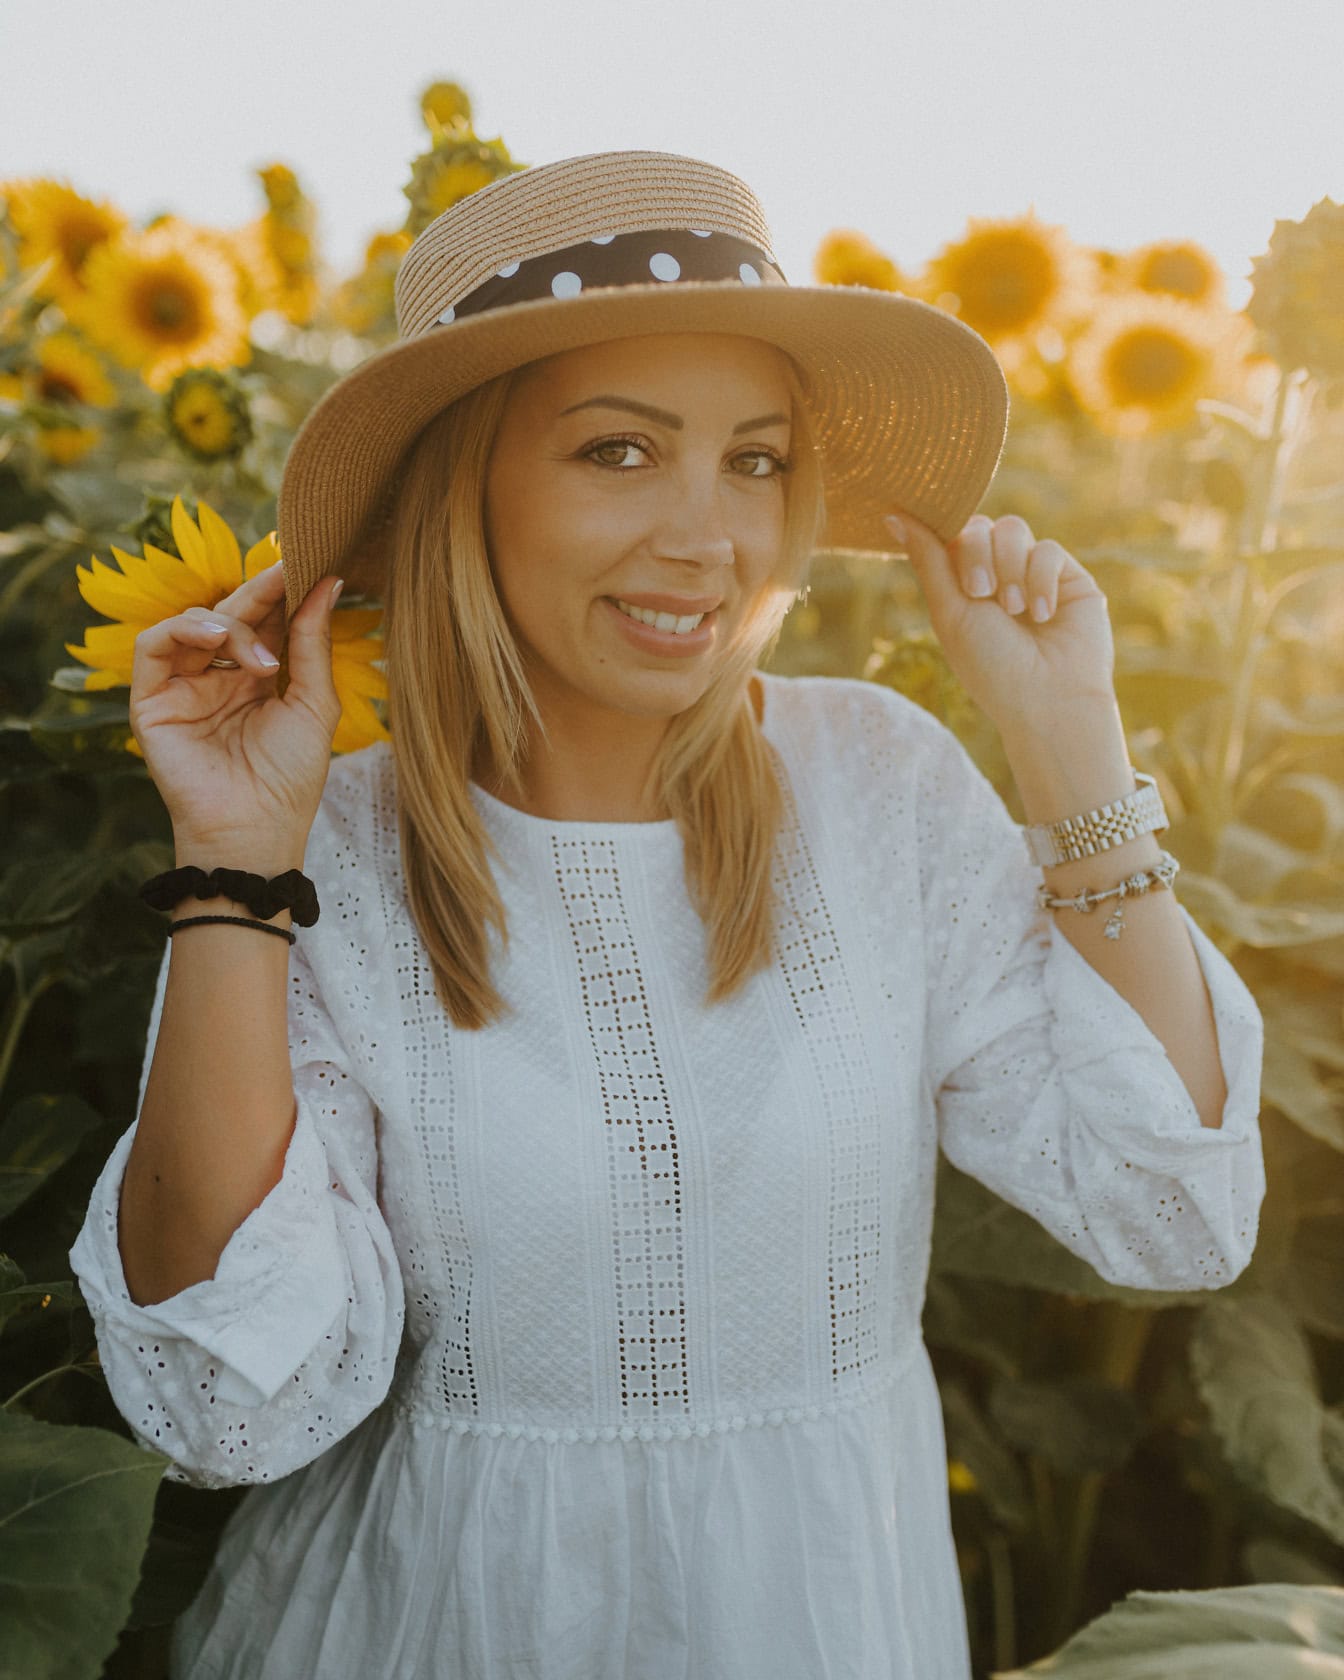 Professionelles Porträtfoto einer gut aussehenden Frau mit Strohhut in einem Sonnenblumenfeld